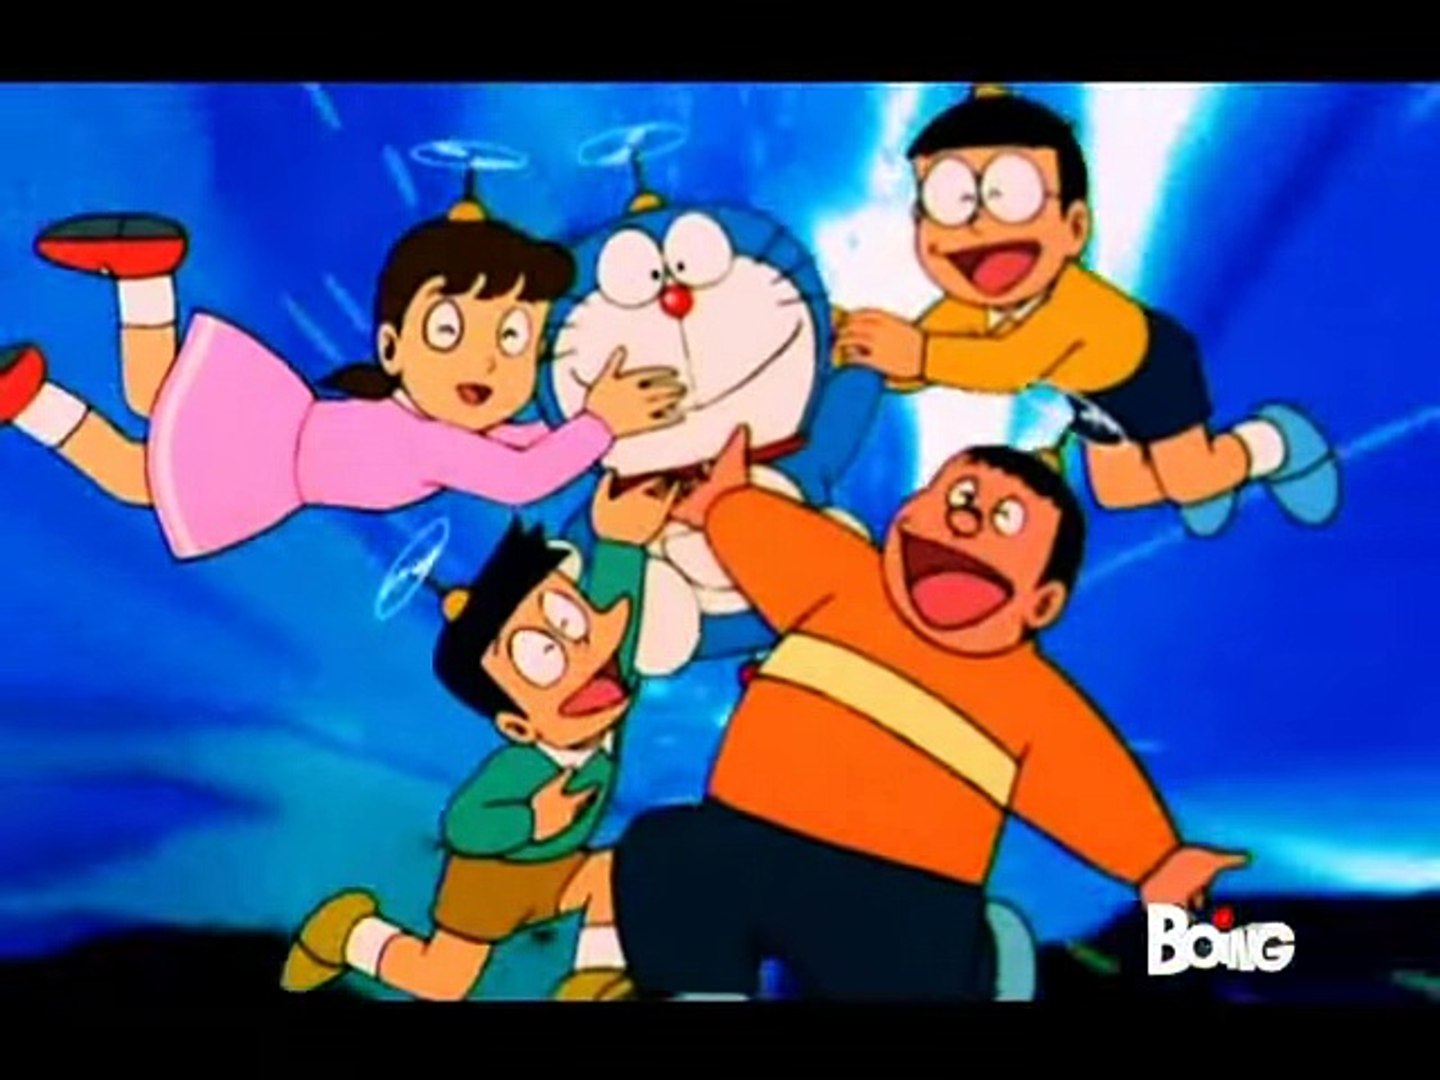 Doraemon ep 01 02 french saison 1 - Video Dailymotion